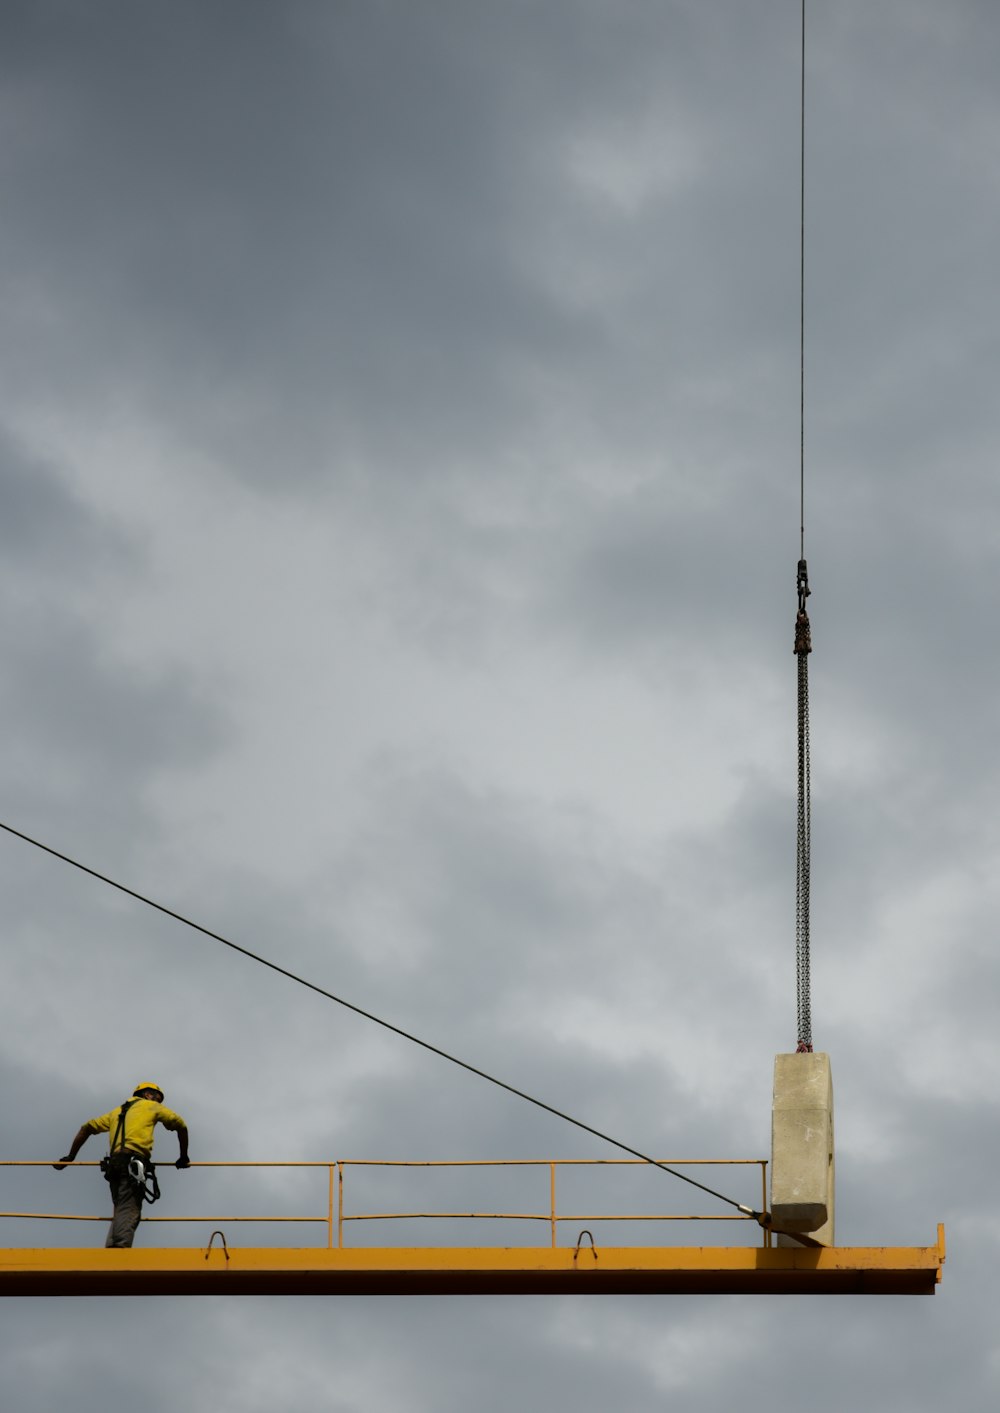 昼間の青い曇り空の下、黄色い金属製のプラットフォームの手すりを持つ黒いハーネスストラップを身に着けた男性